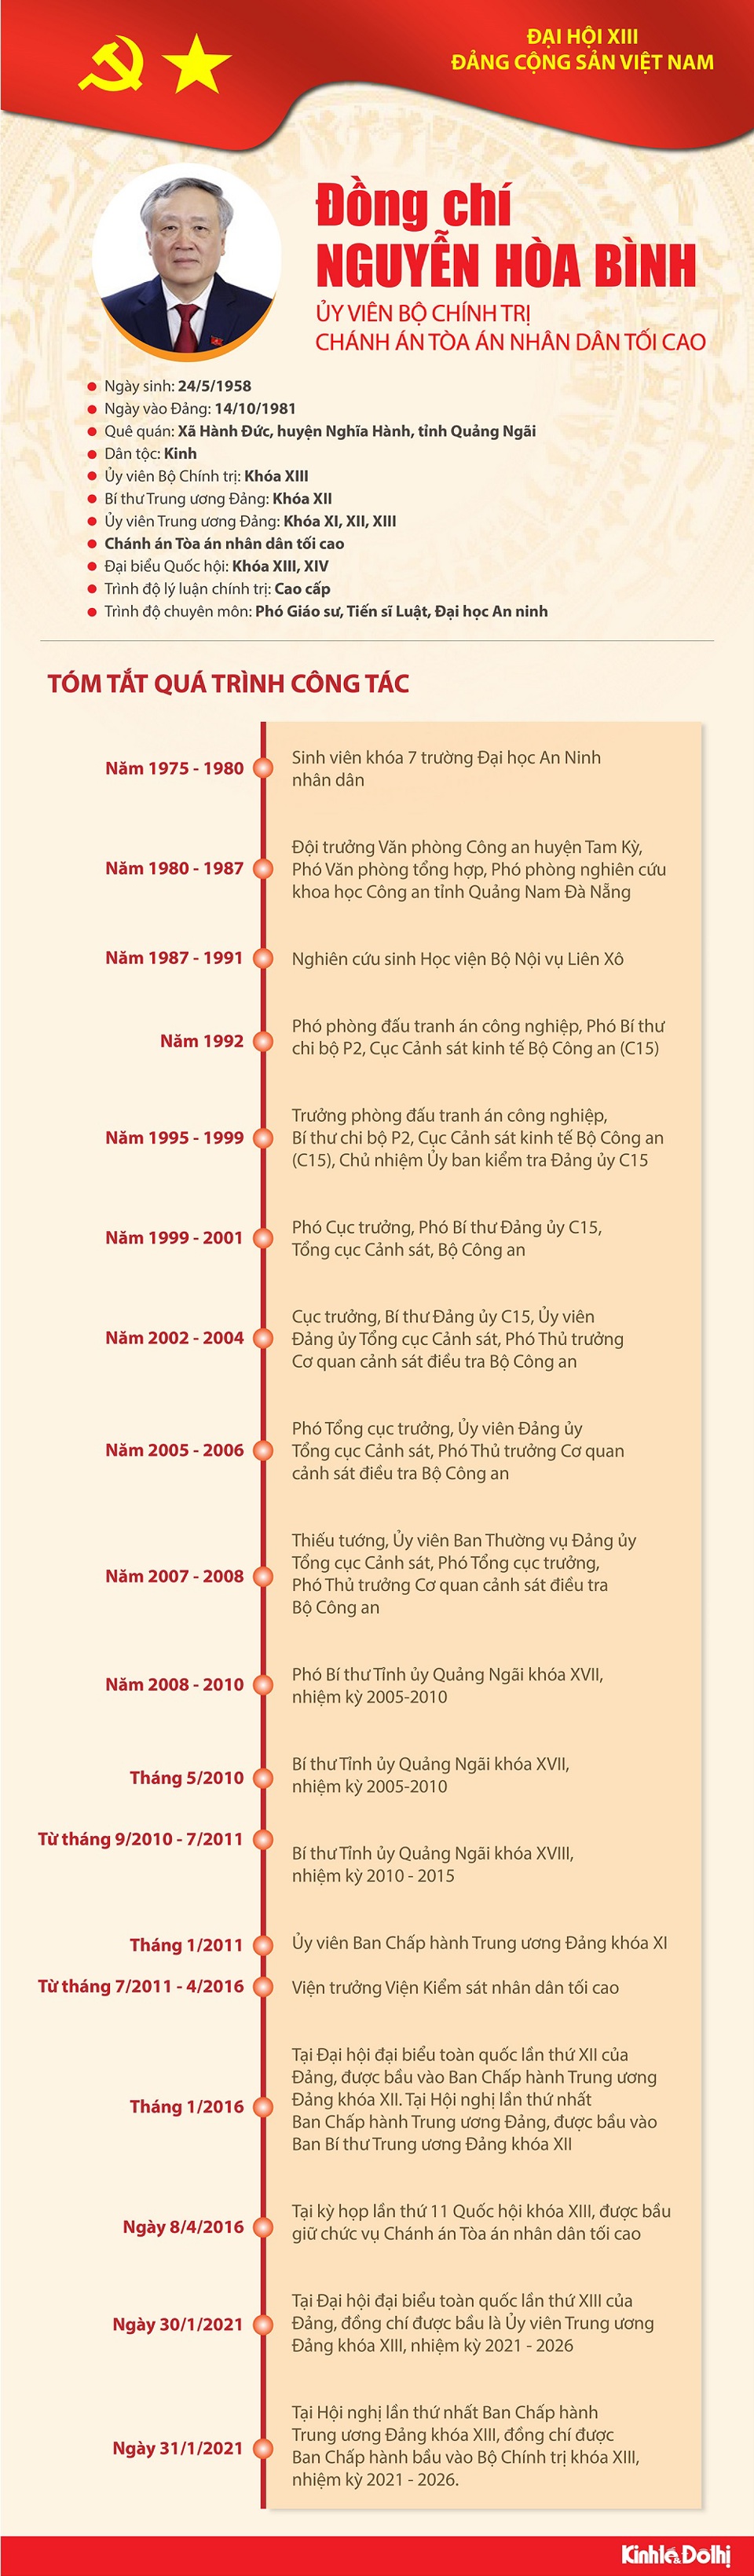 [Infographic] Quá trình công tác Ủy viên Bộ Chính trị Nguyễn Hòa Bình - Ảnh 1